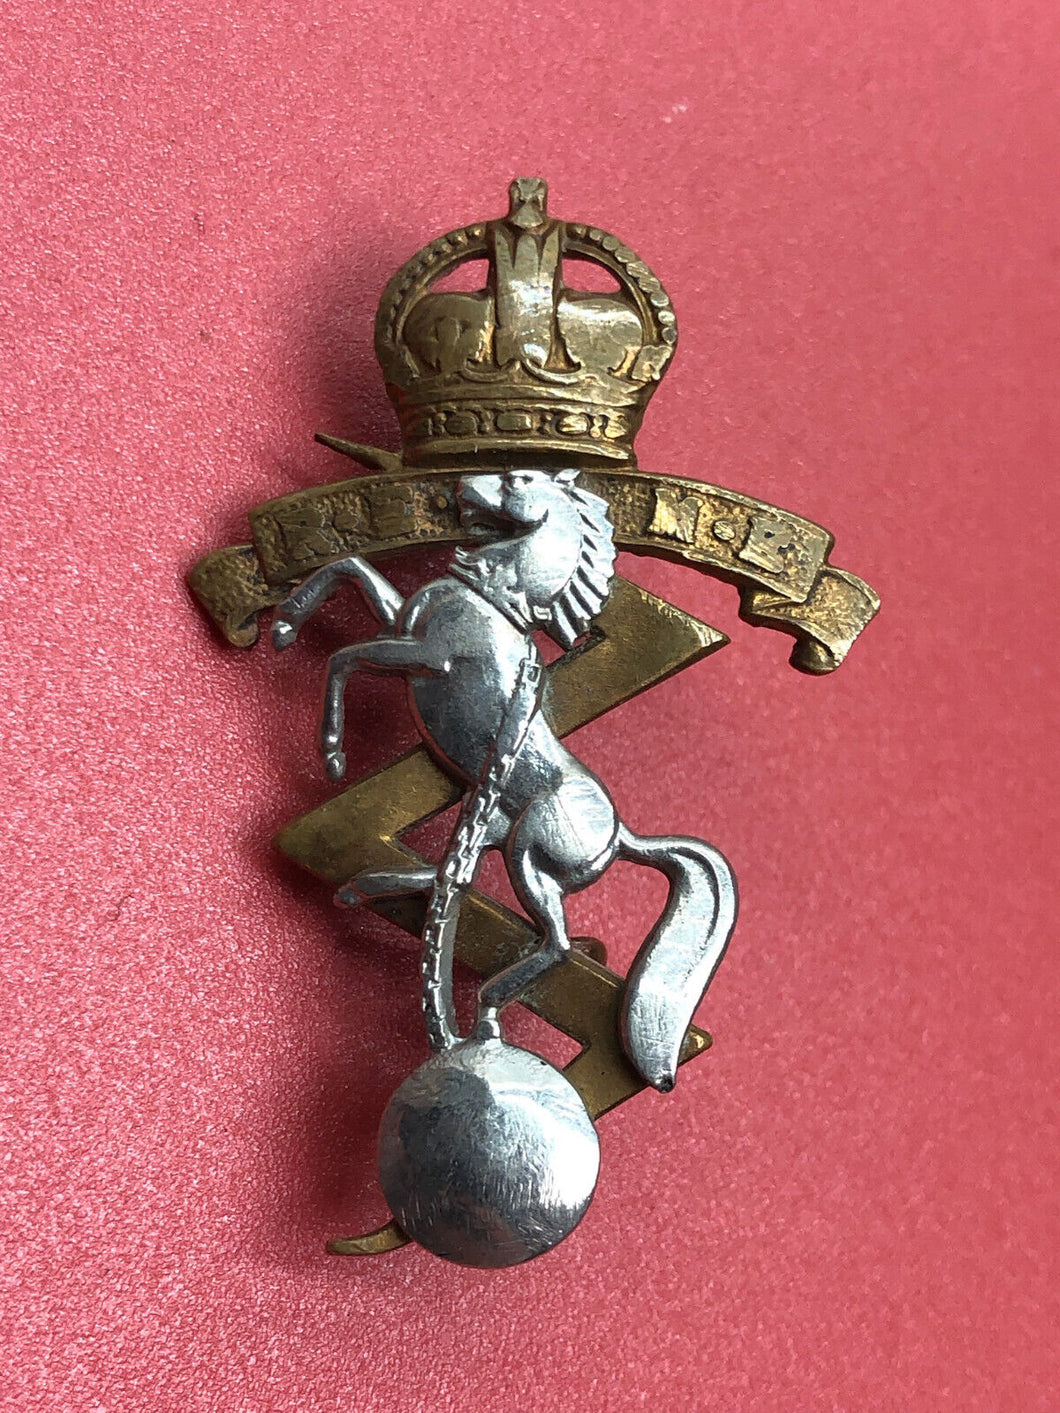 Original WW2 British Army Kings Crown Cap Badge - REME Engineers